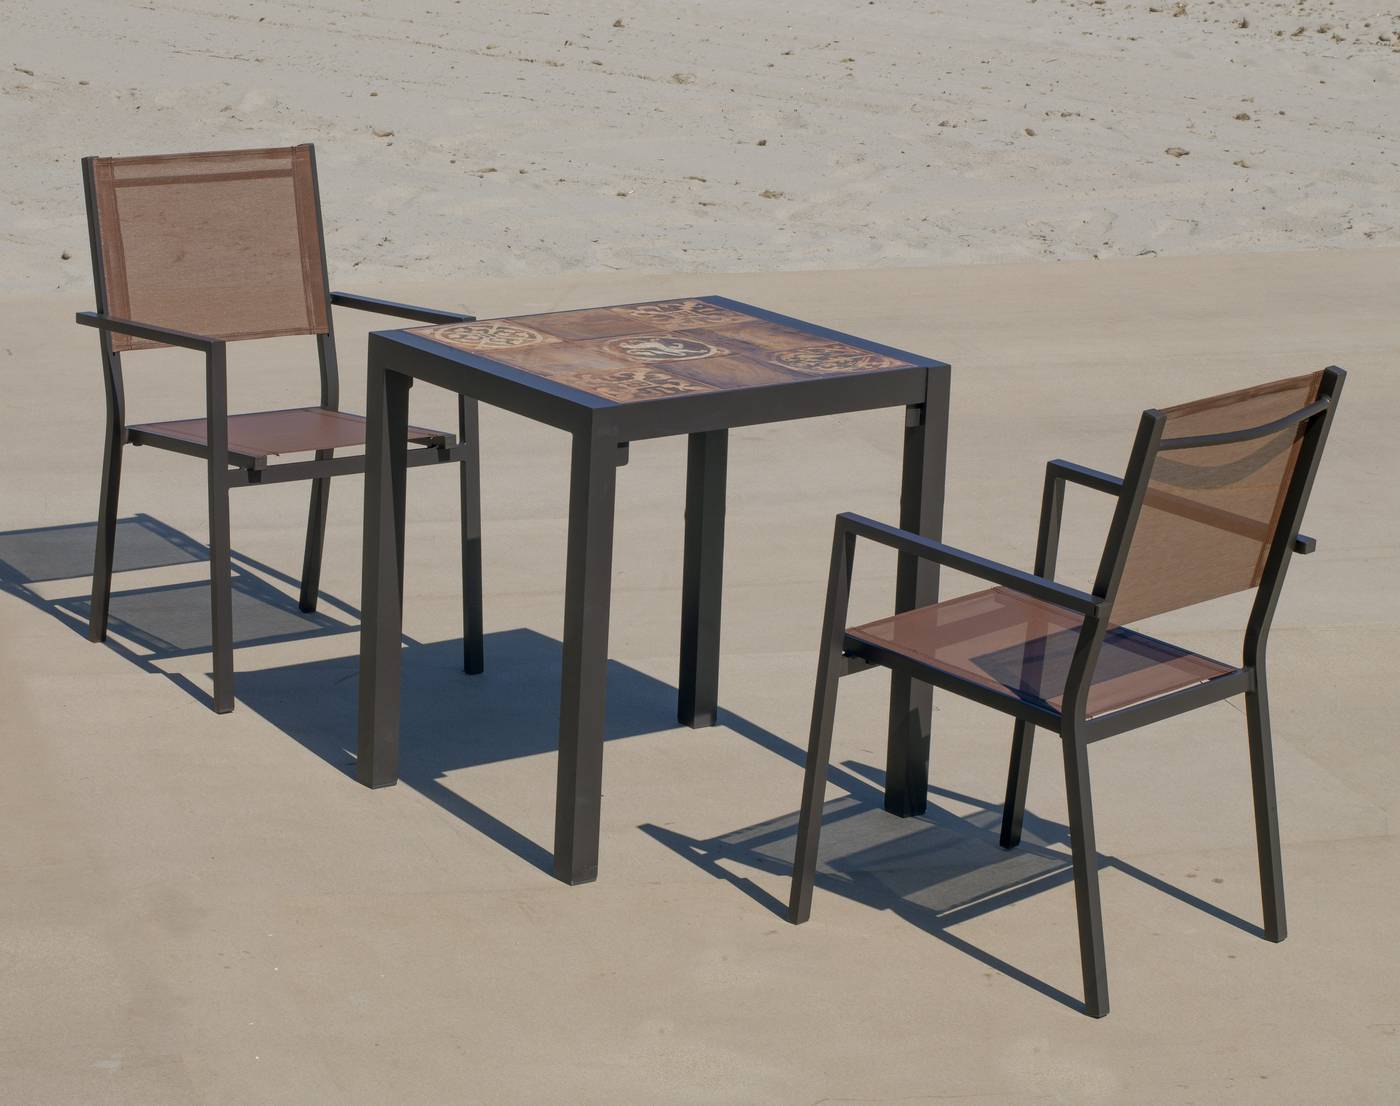 Conjunto de aluminio color marrón: Mesa cuadrada con tablero mosaico de 60 cm + 2 sillones de textilen.